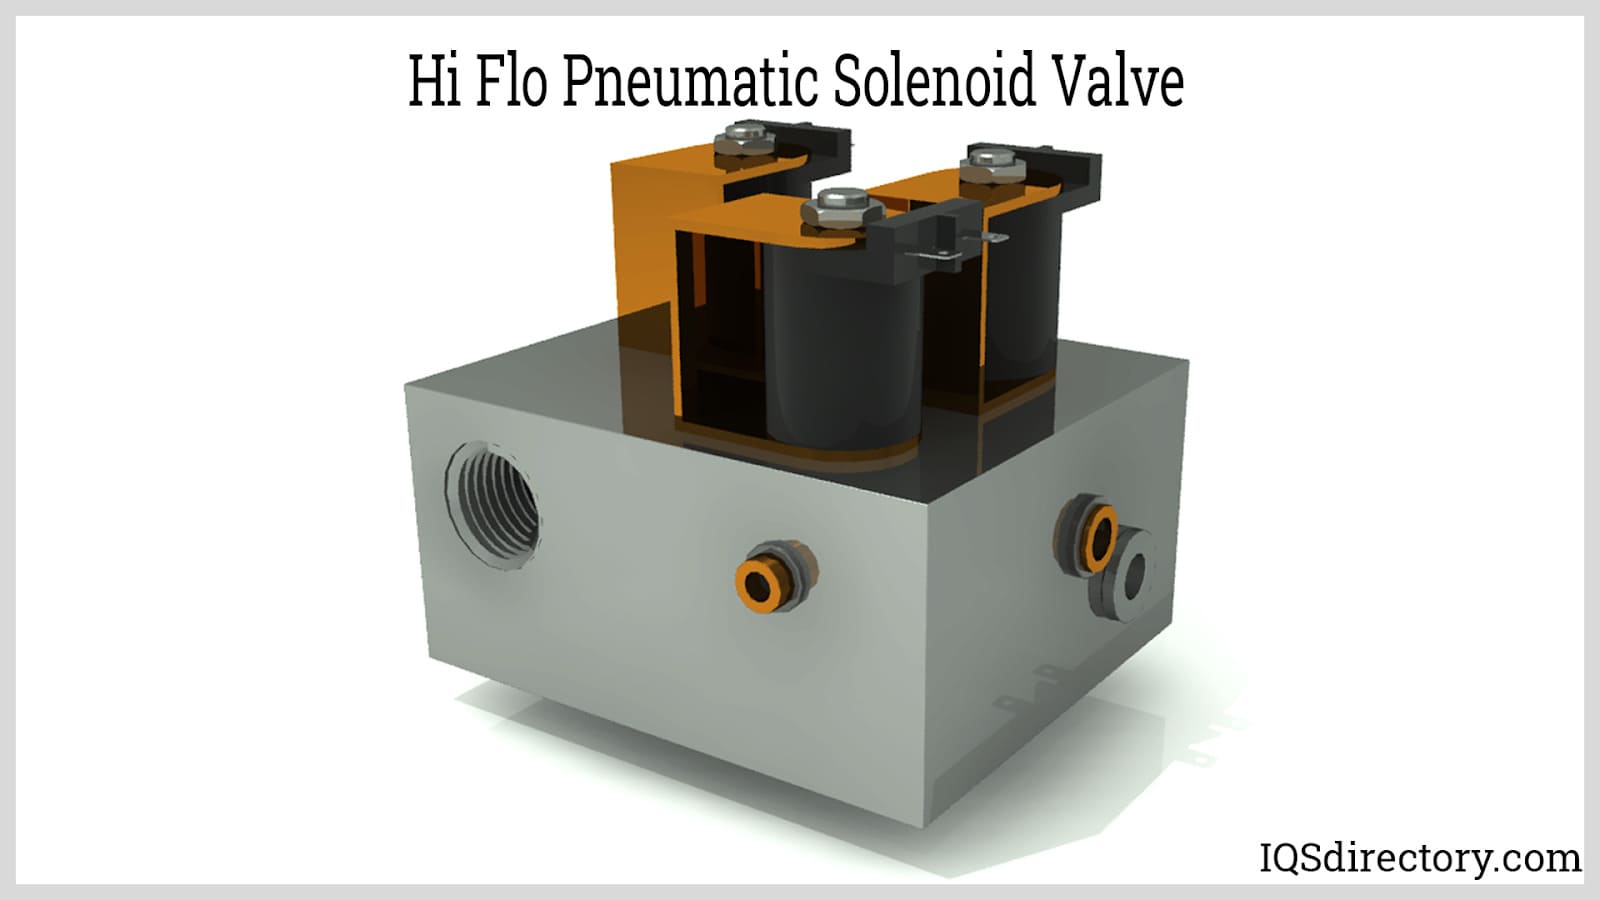 Hi Flo Pneumatic Solenoid Valve